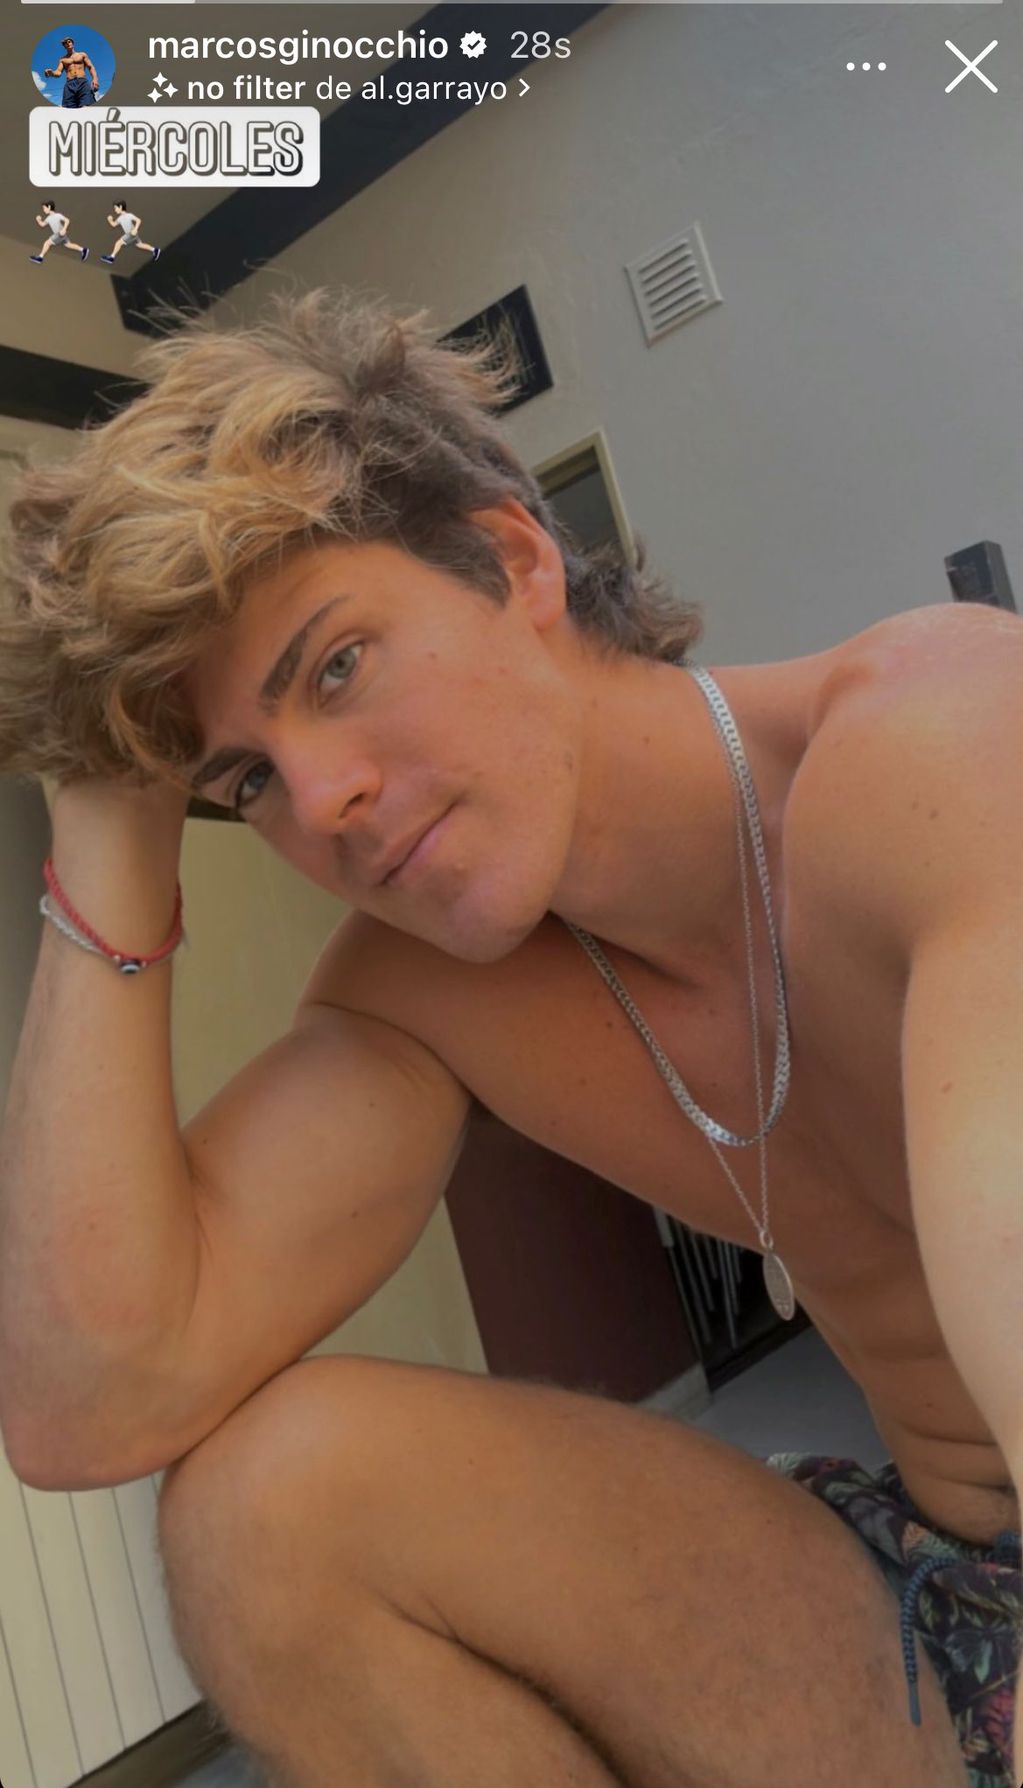 Marcos Ginocchio reapareció en Instagram con una selfie